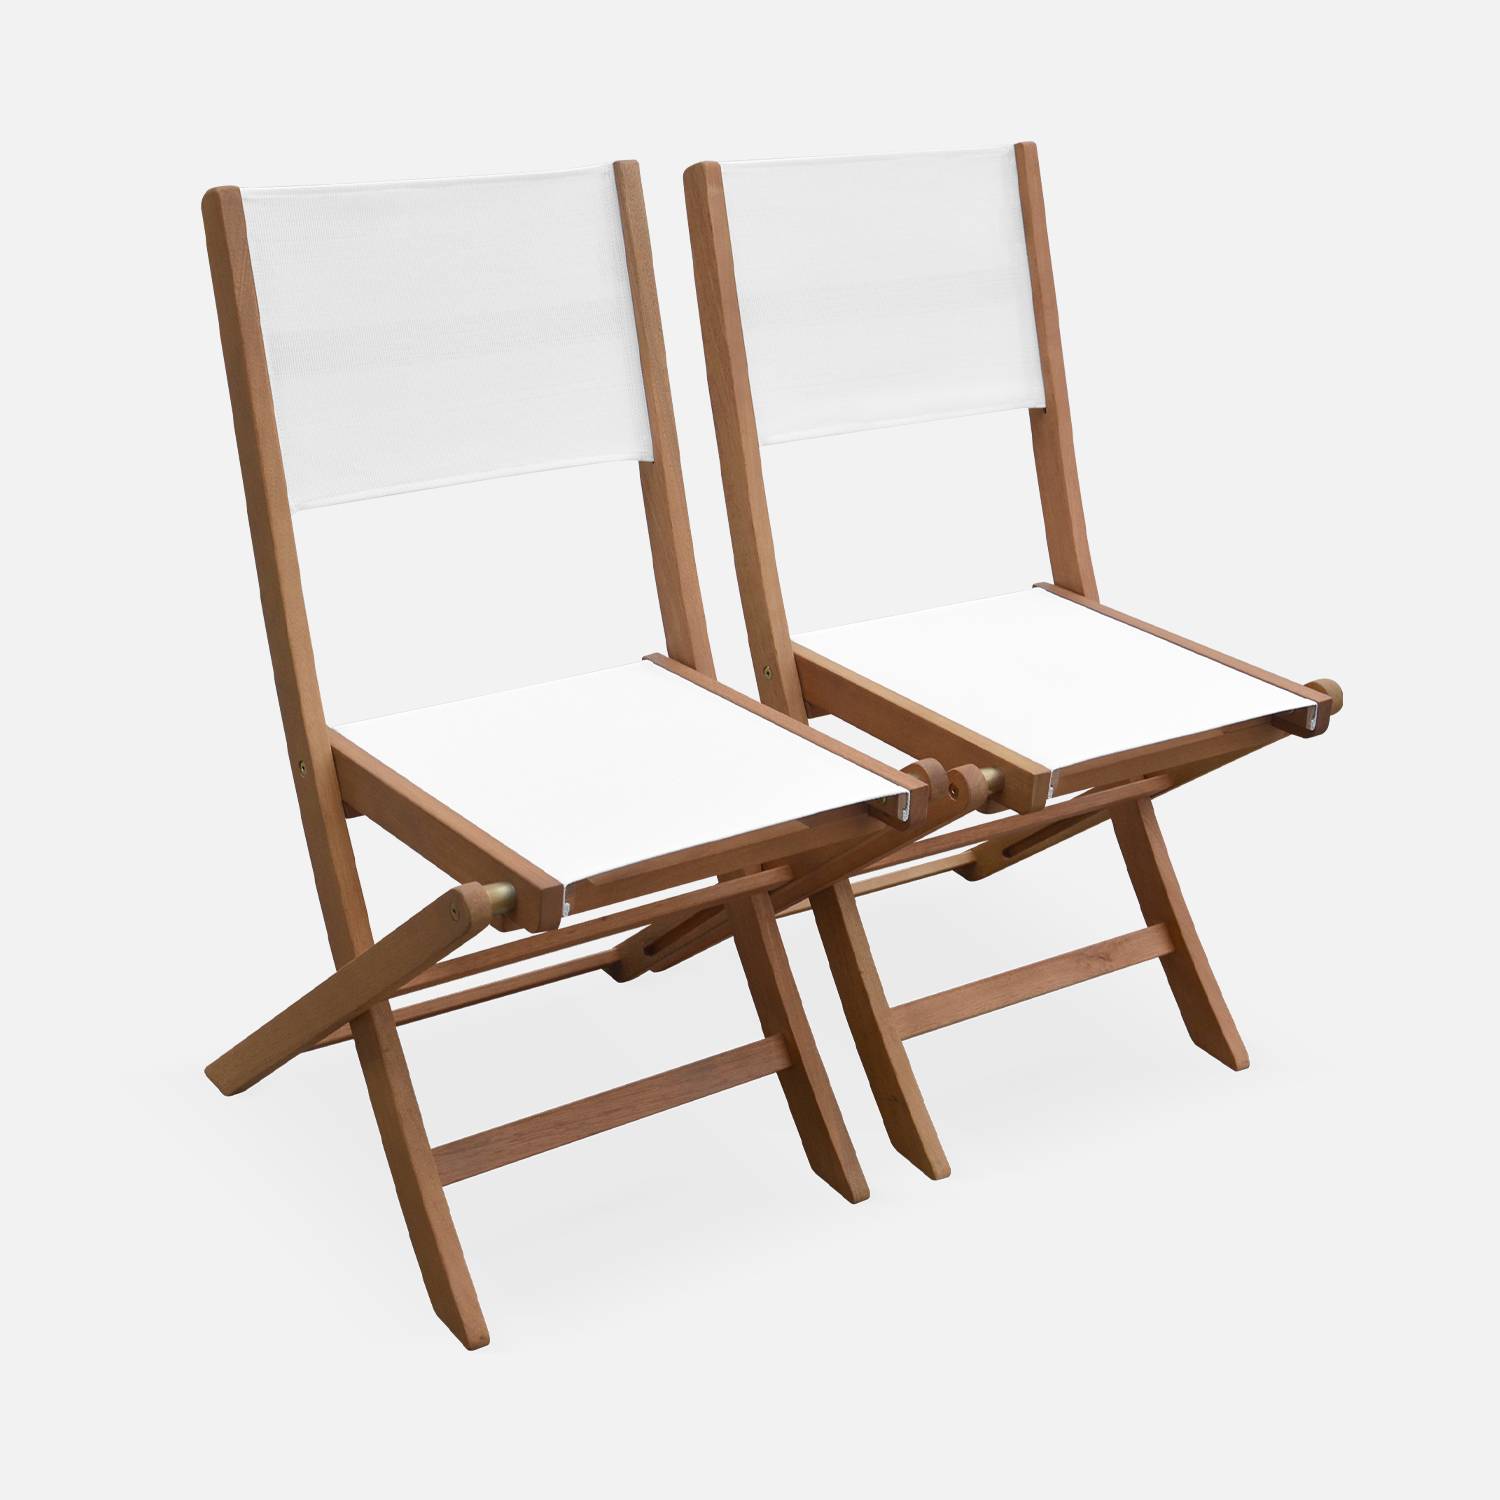 Sedie da giardino, in legno e textilene - modello: Almeria, colore: Bianco - 2 sedie pieghevoli in legno di eucalipto FSC oliato e textilene,sweeek,Photo3